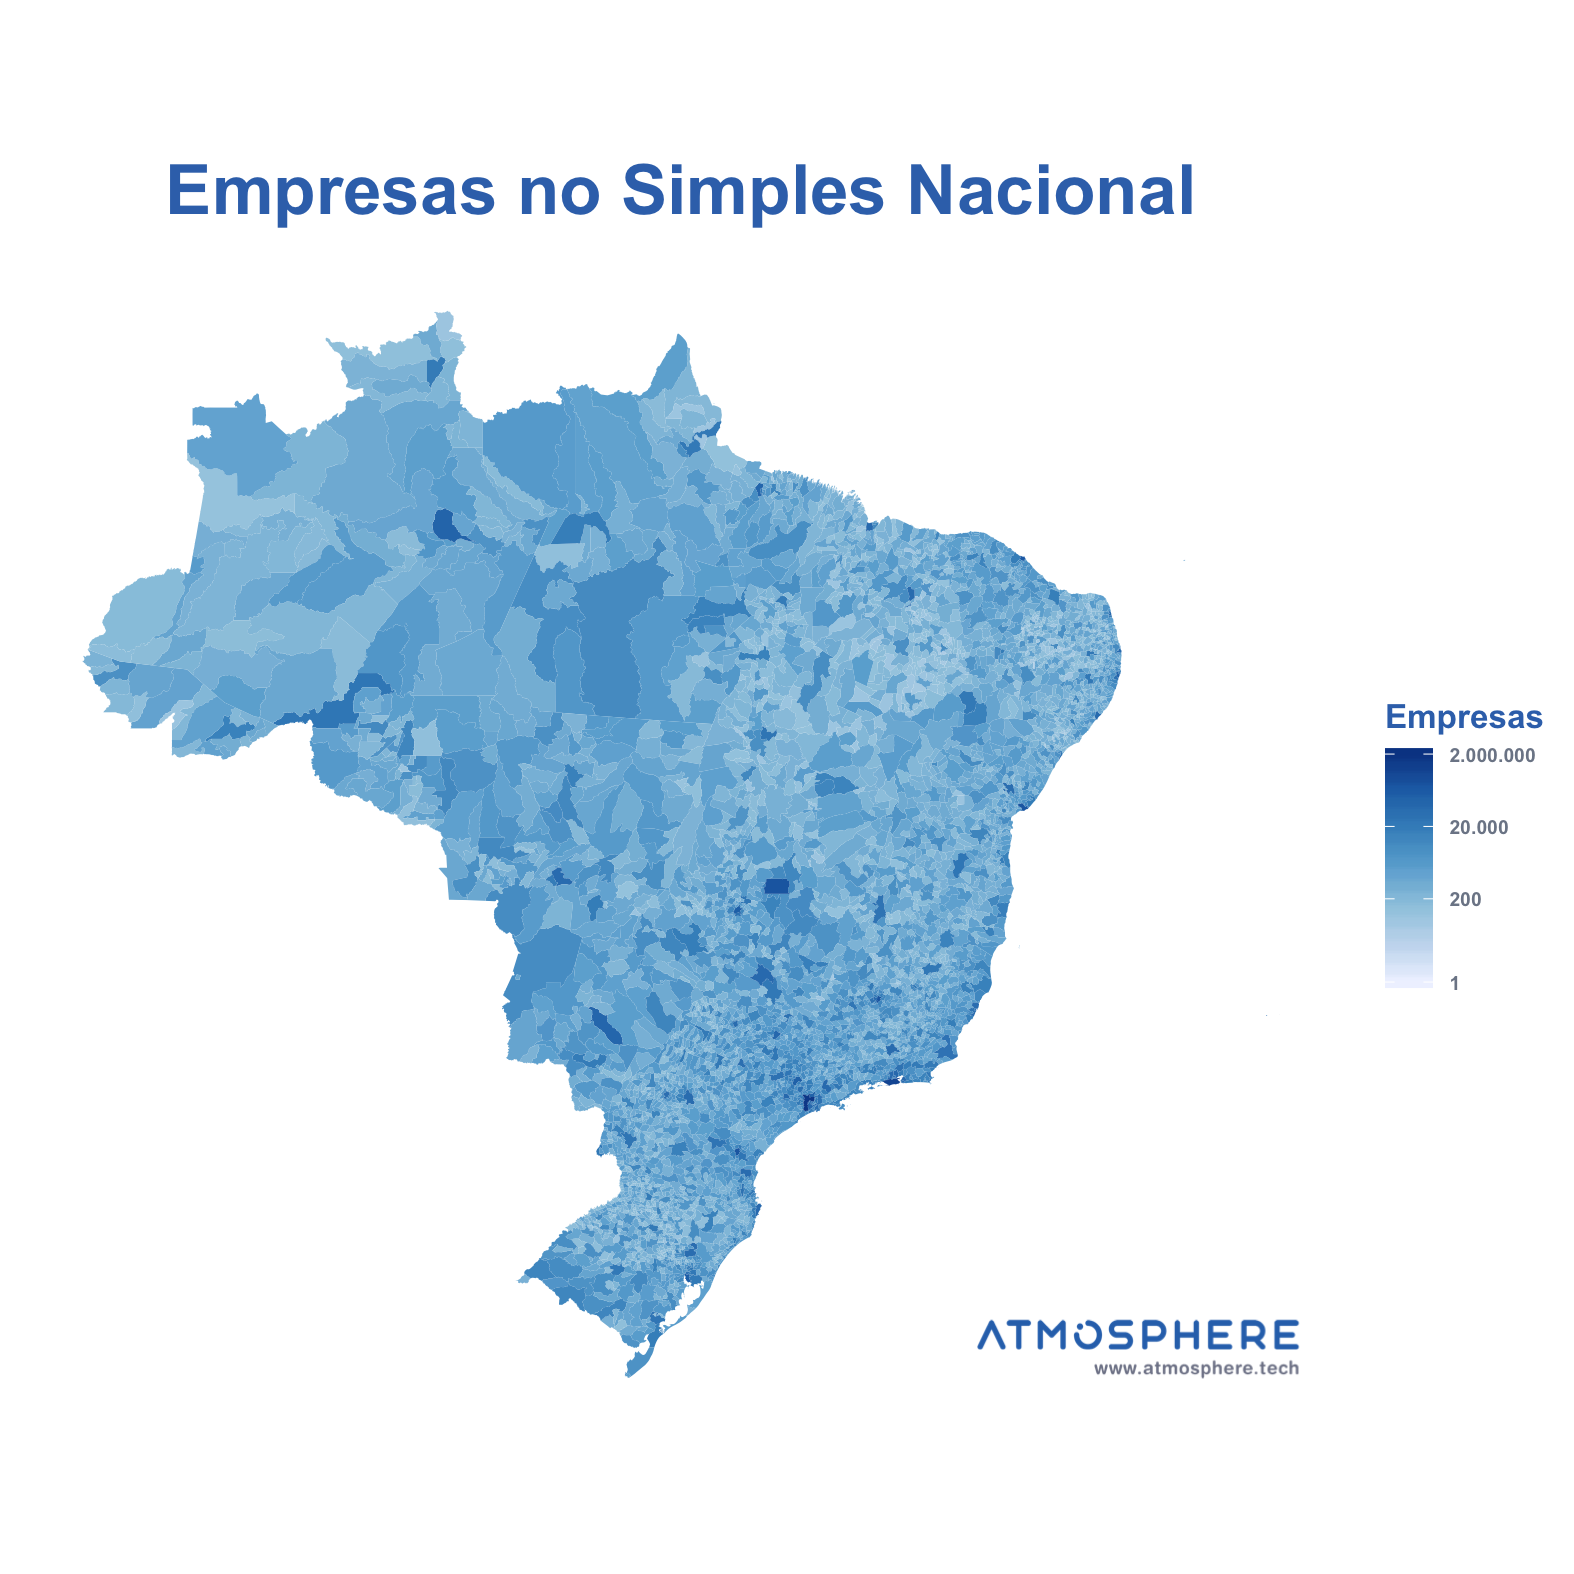 Oportunidados Empresas no Simples Nacional por Município no Brasil